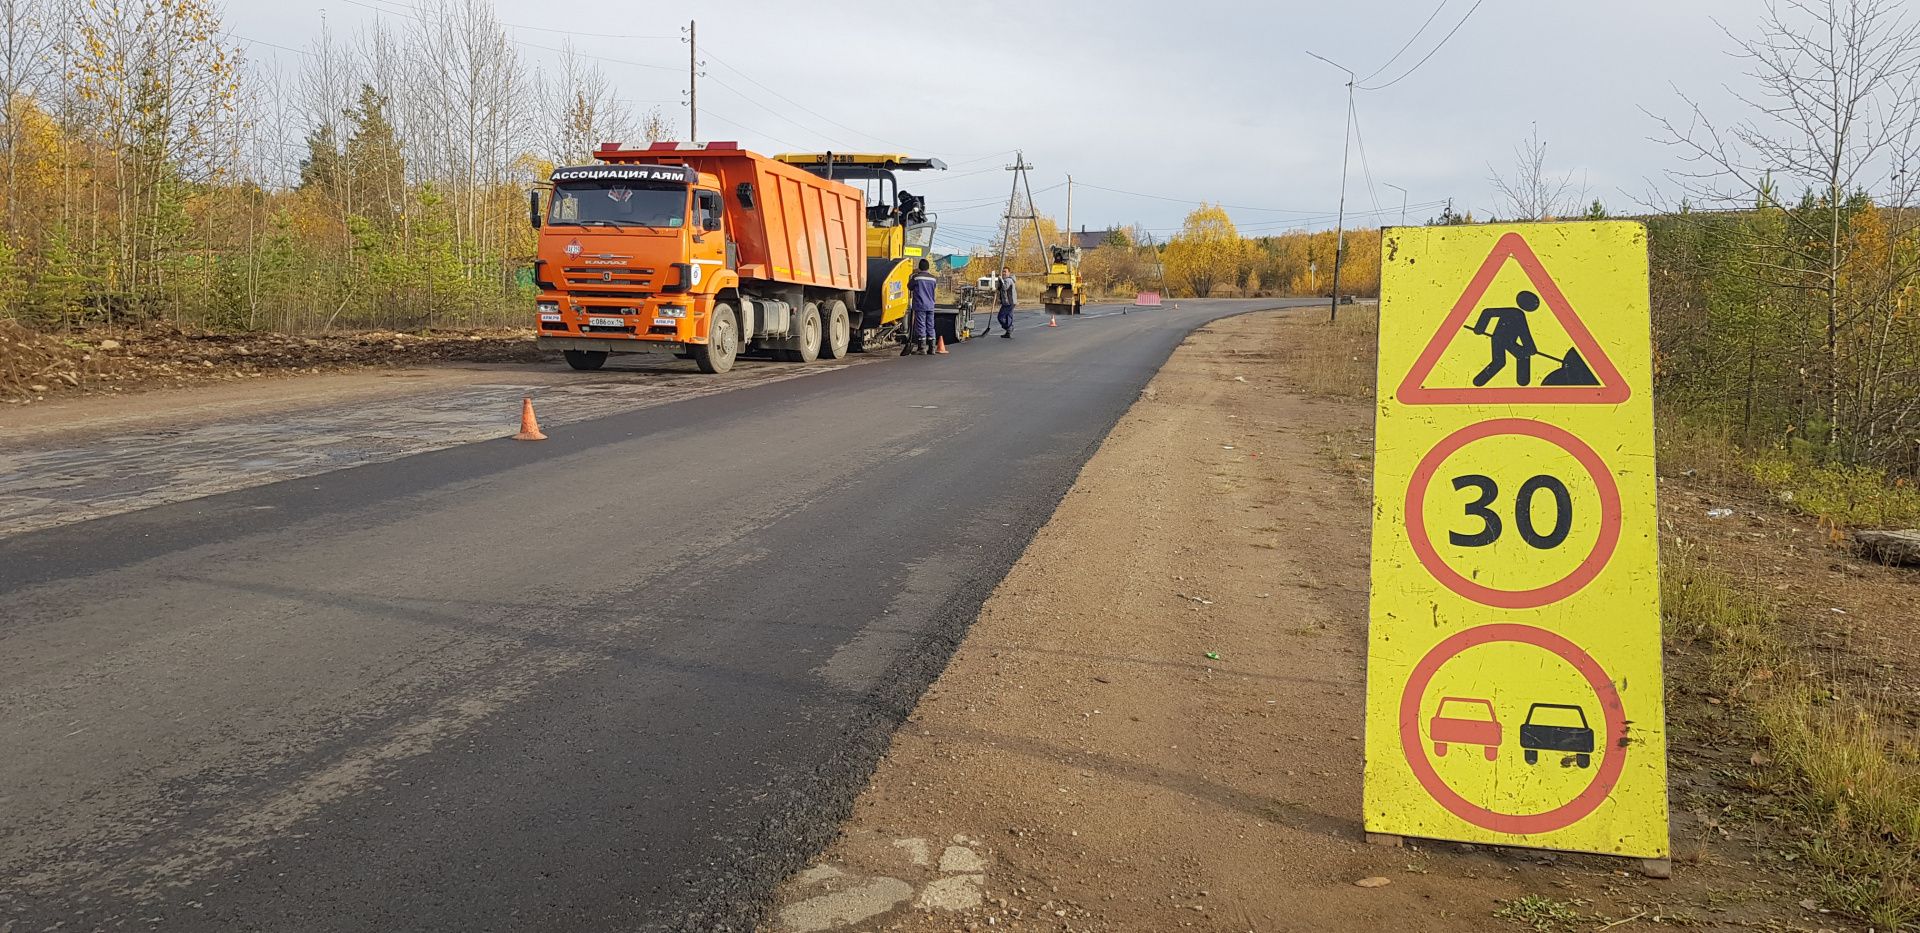 Закончилась укладка асфальта на участке автодороги, ведущей в поселок Нижний Куранах | Ассоциация строителей Амуро-Якутской магистрали»